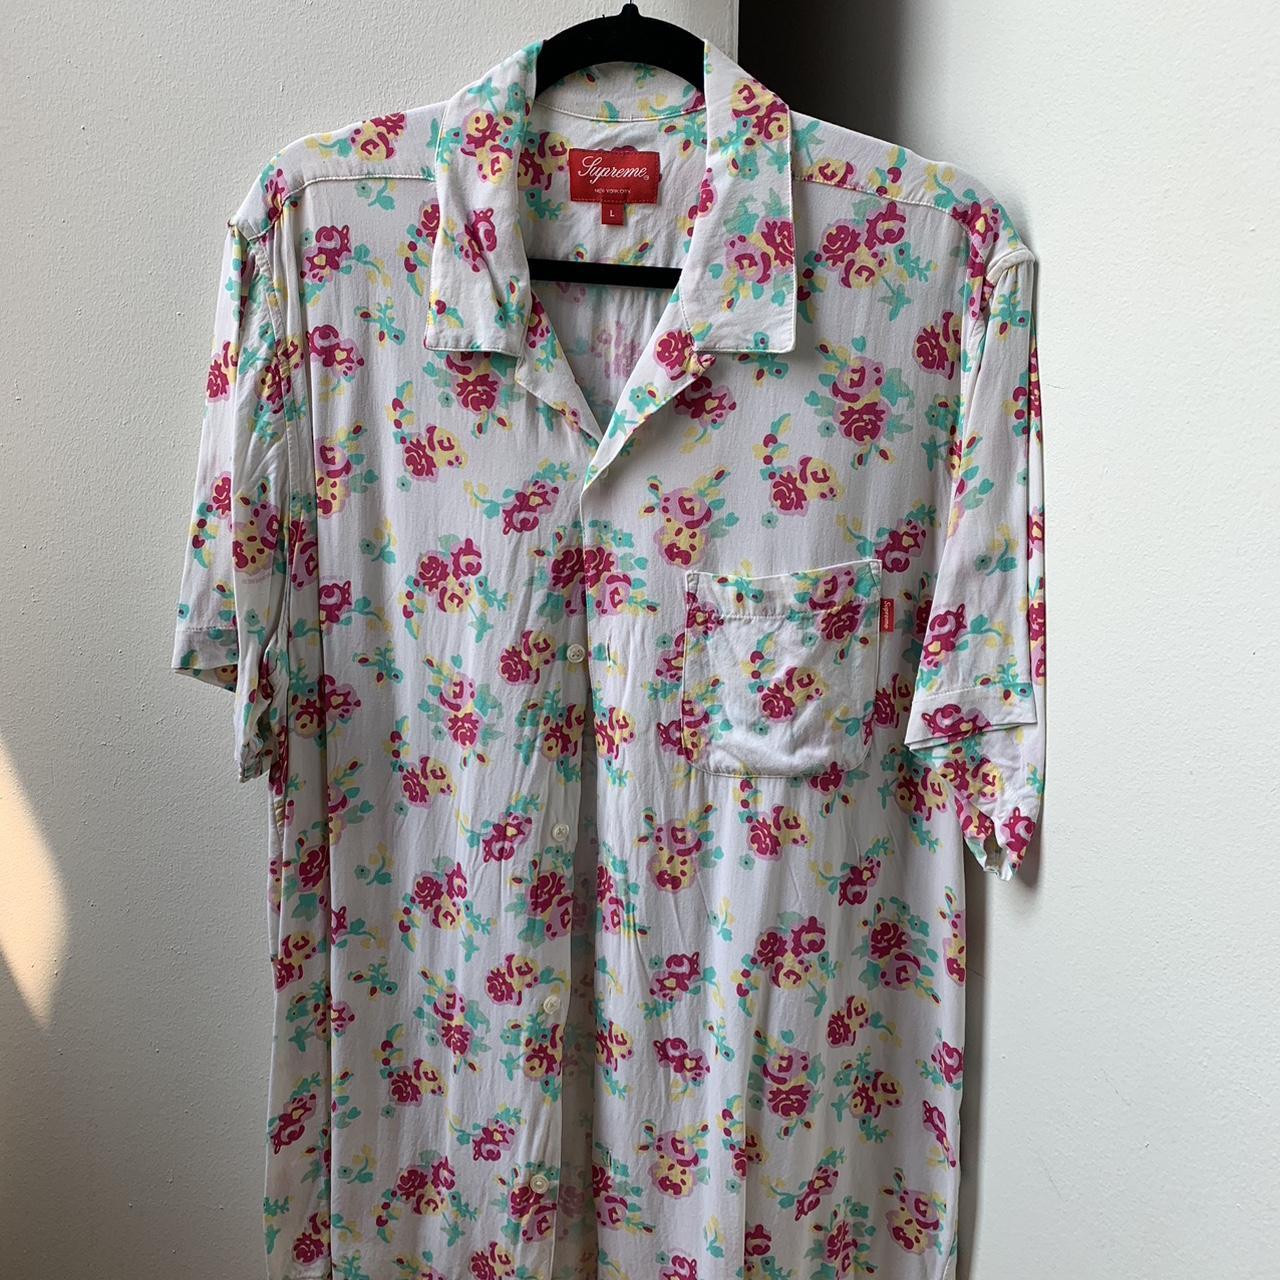 送料無料 S supreme Floral Rayon S/S Shirt